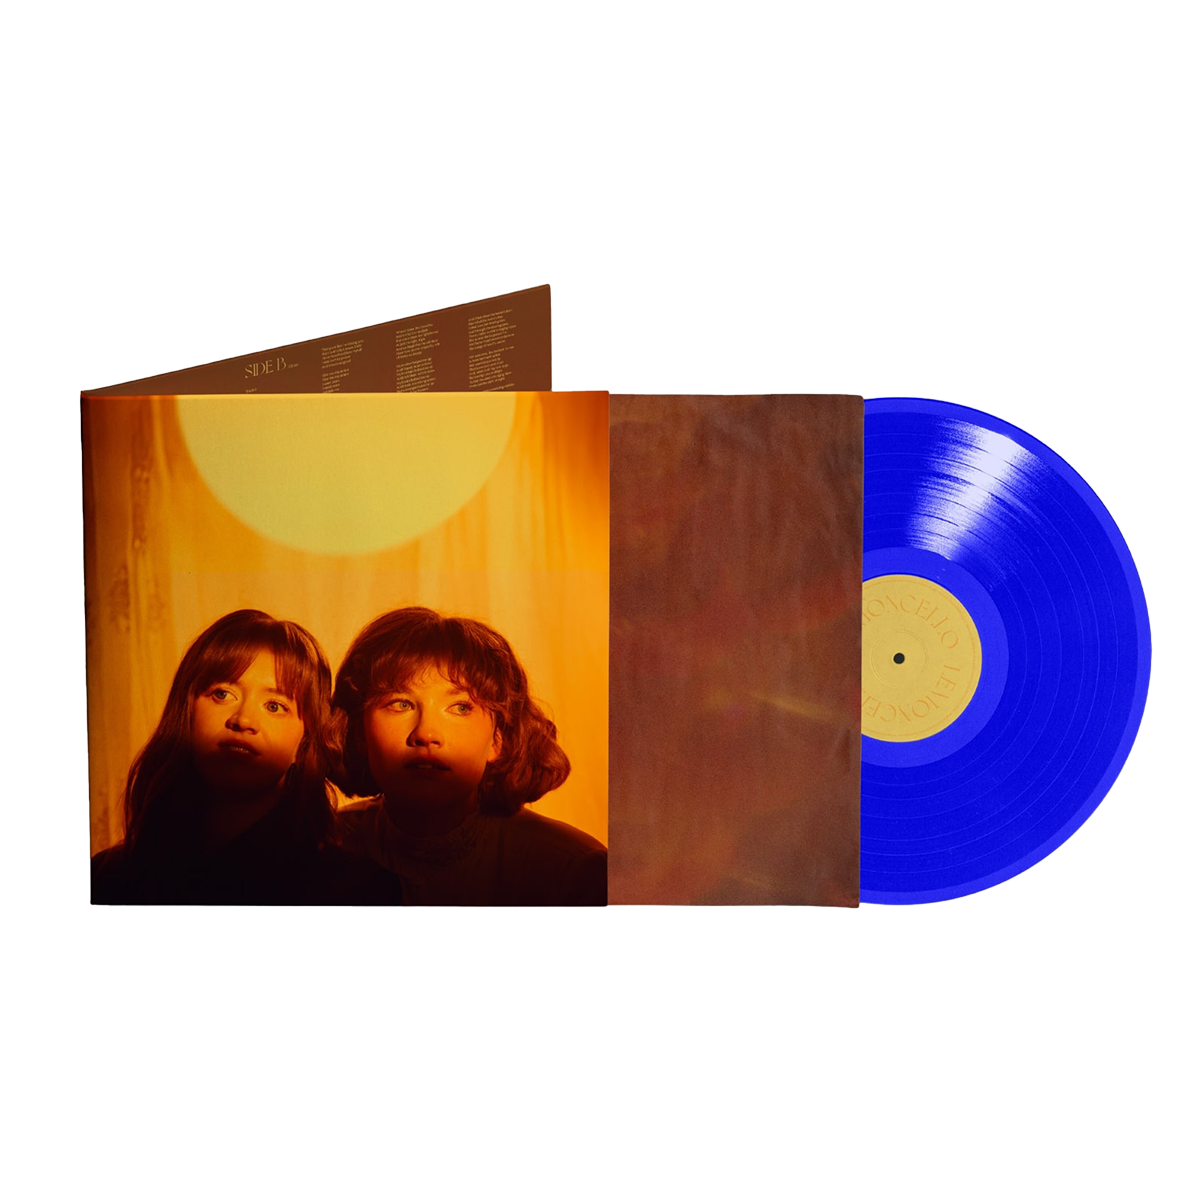 Lemoncello - Lemoncello: Blue Vinyl LP